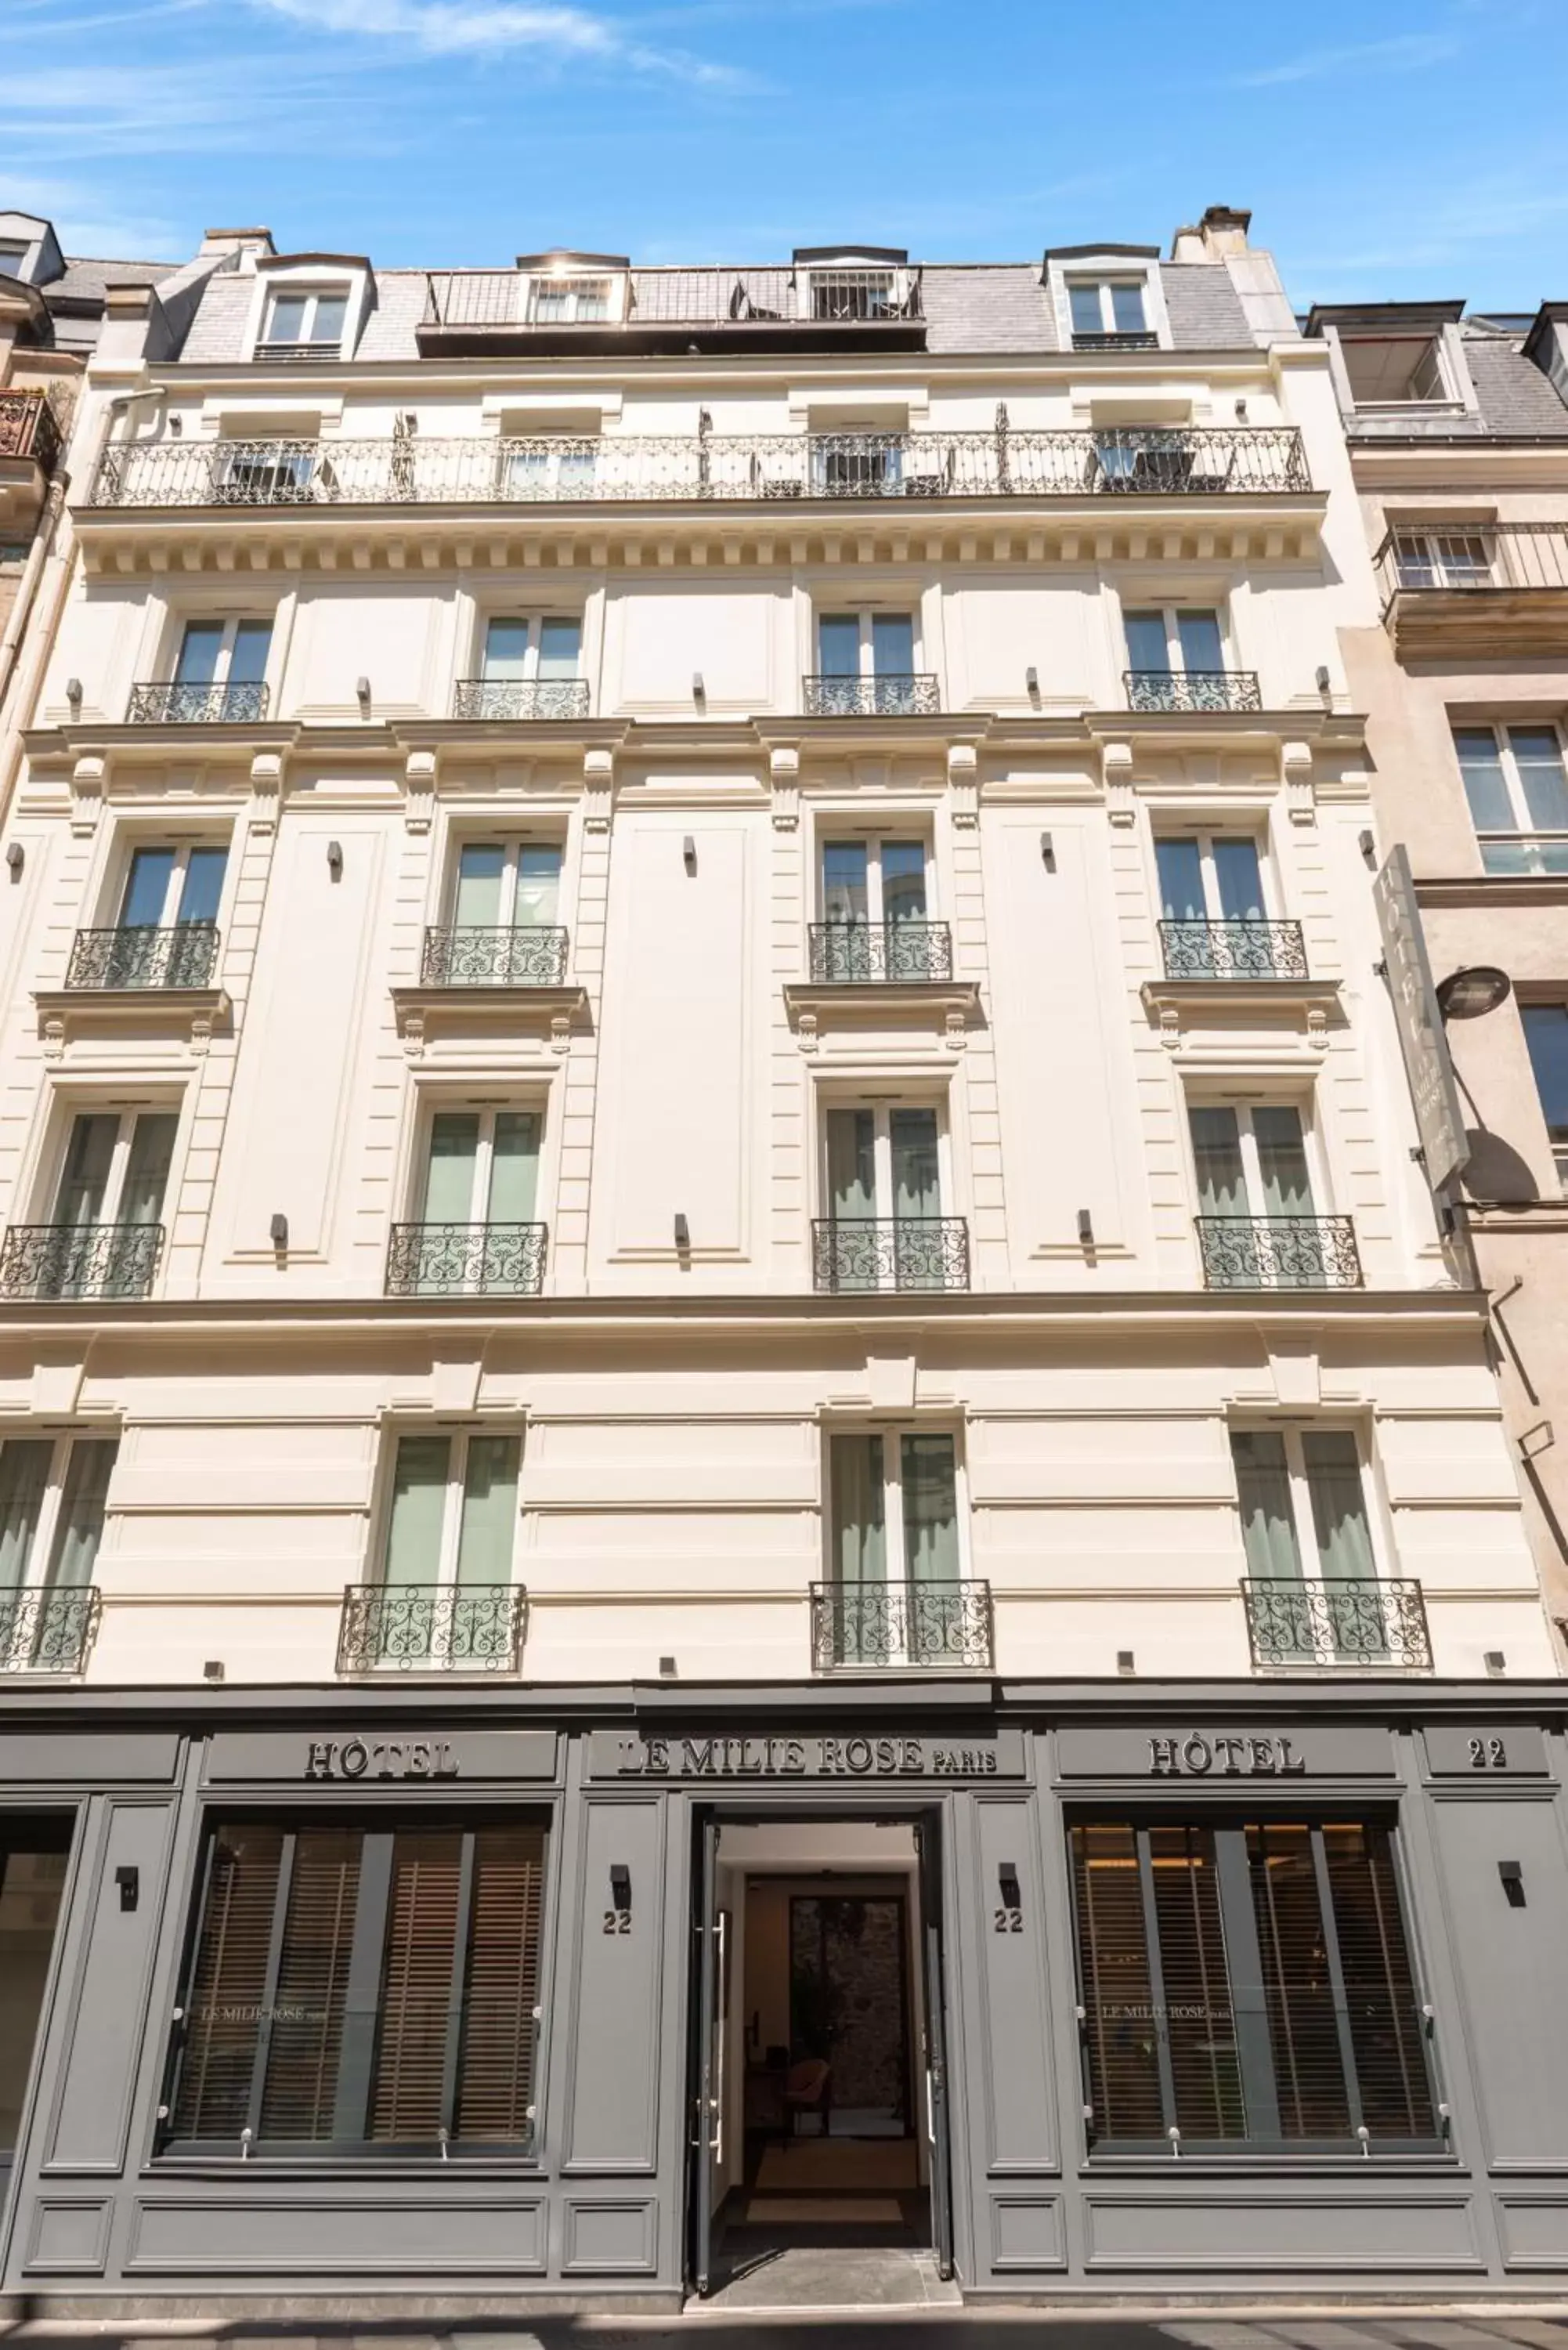 Facade/entrance, Property Building in Hôtel Le Milie Rose